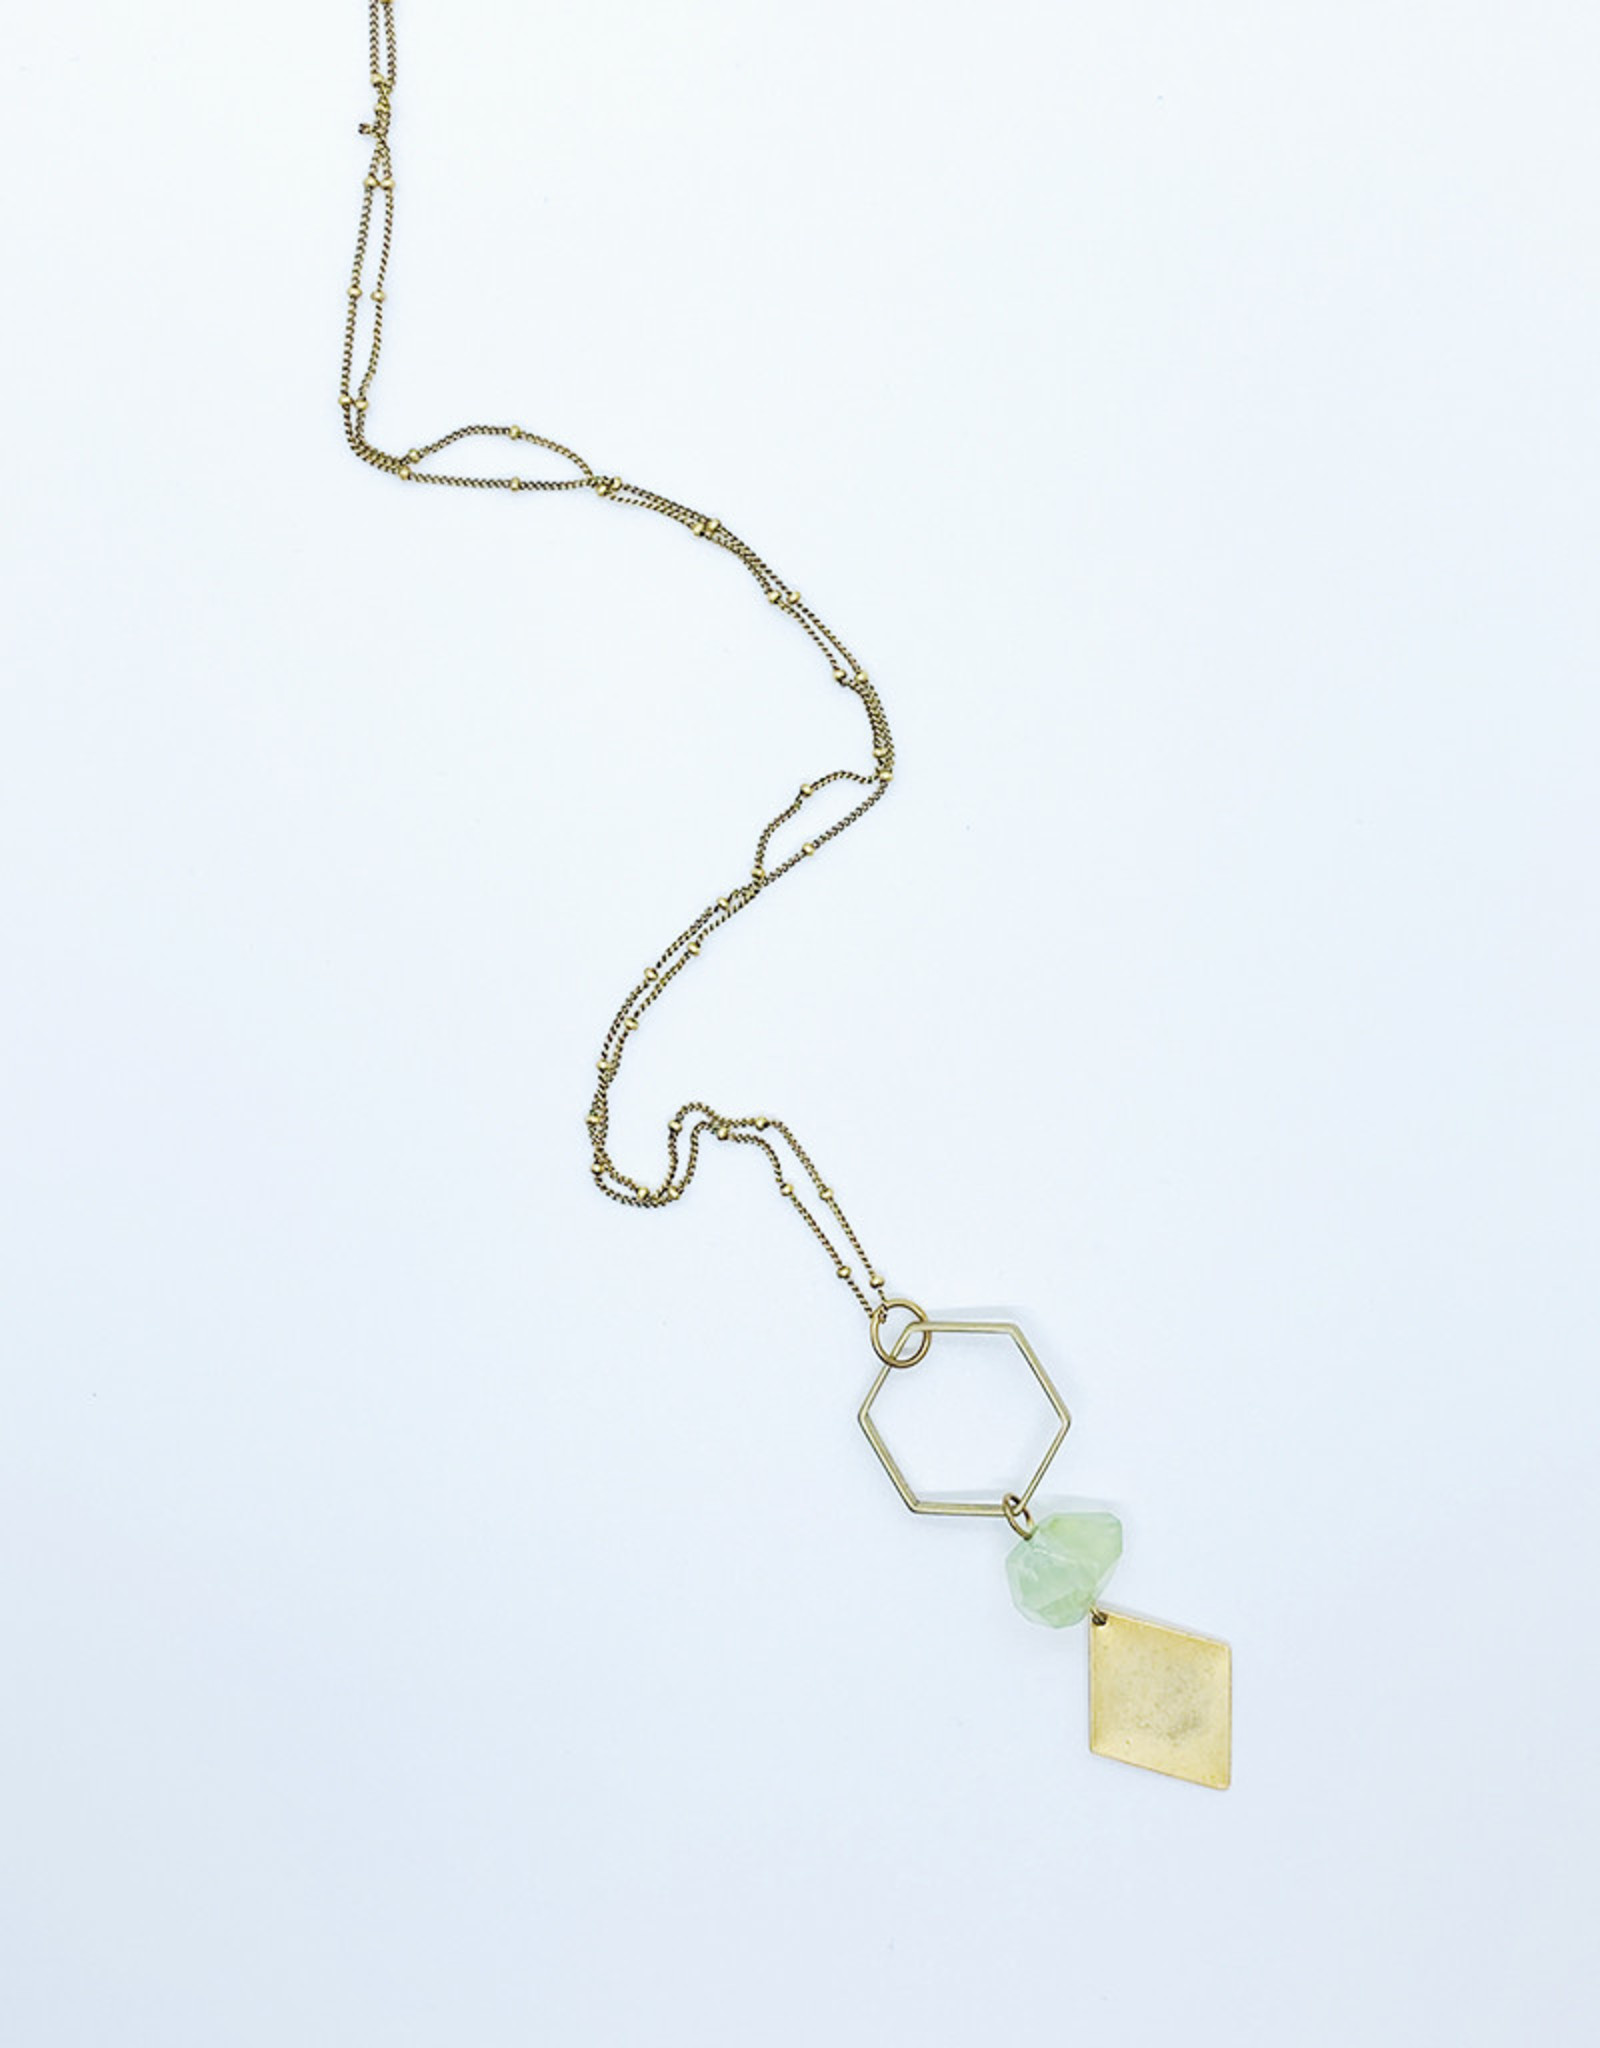 Tilly Doro Hexagon + Green Amethyst Necklace // Tillydoro